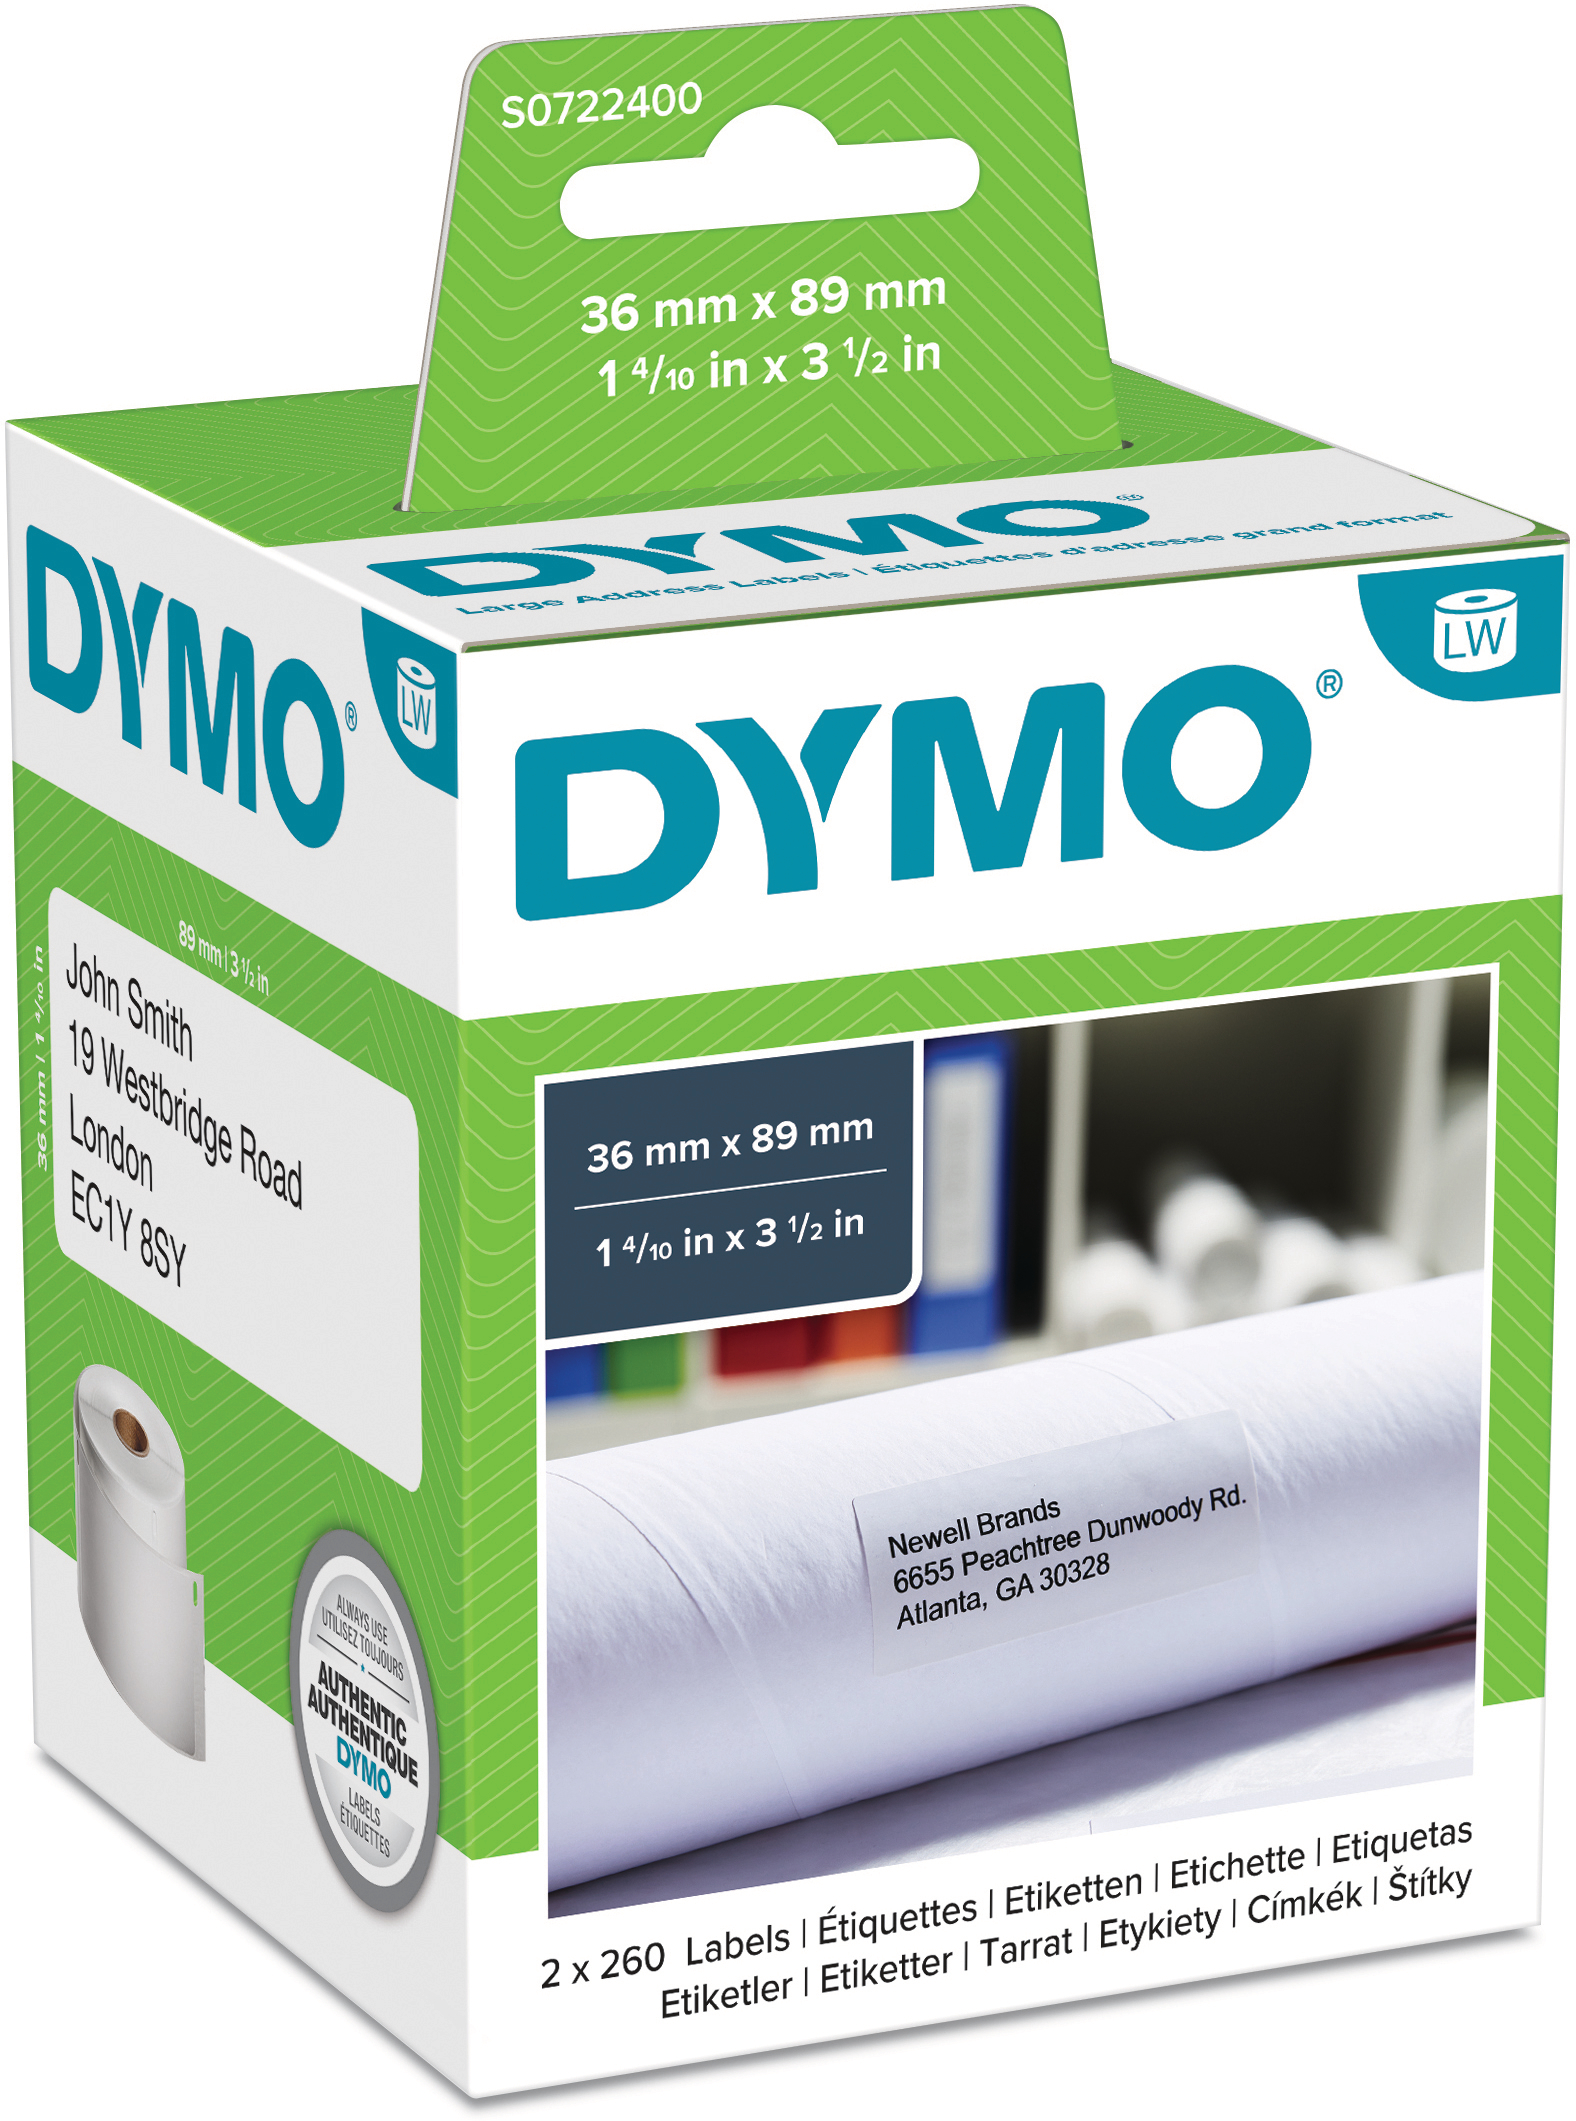 DYMO Etiquettes d'adresse S0722400 permanent 89x36mm